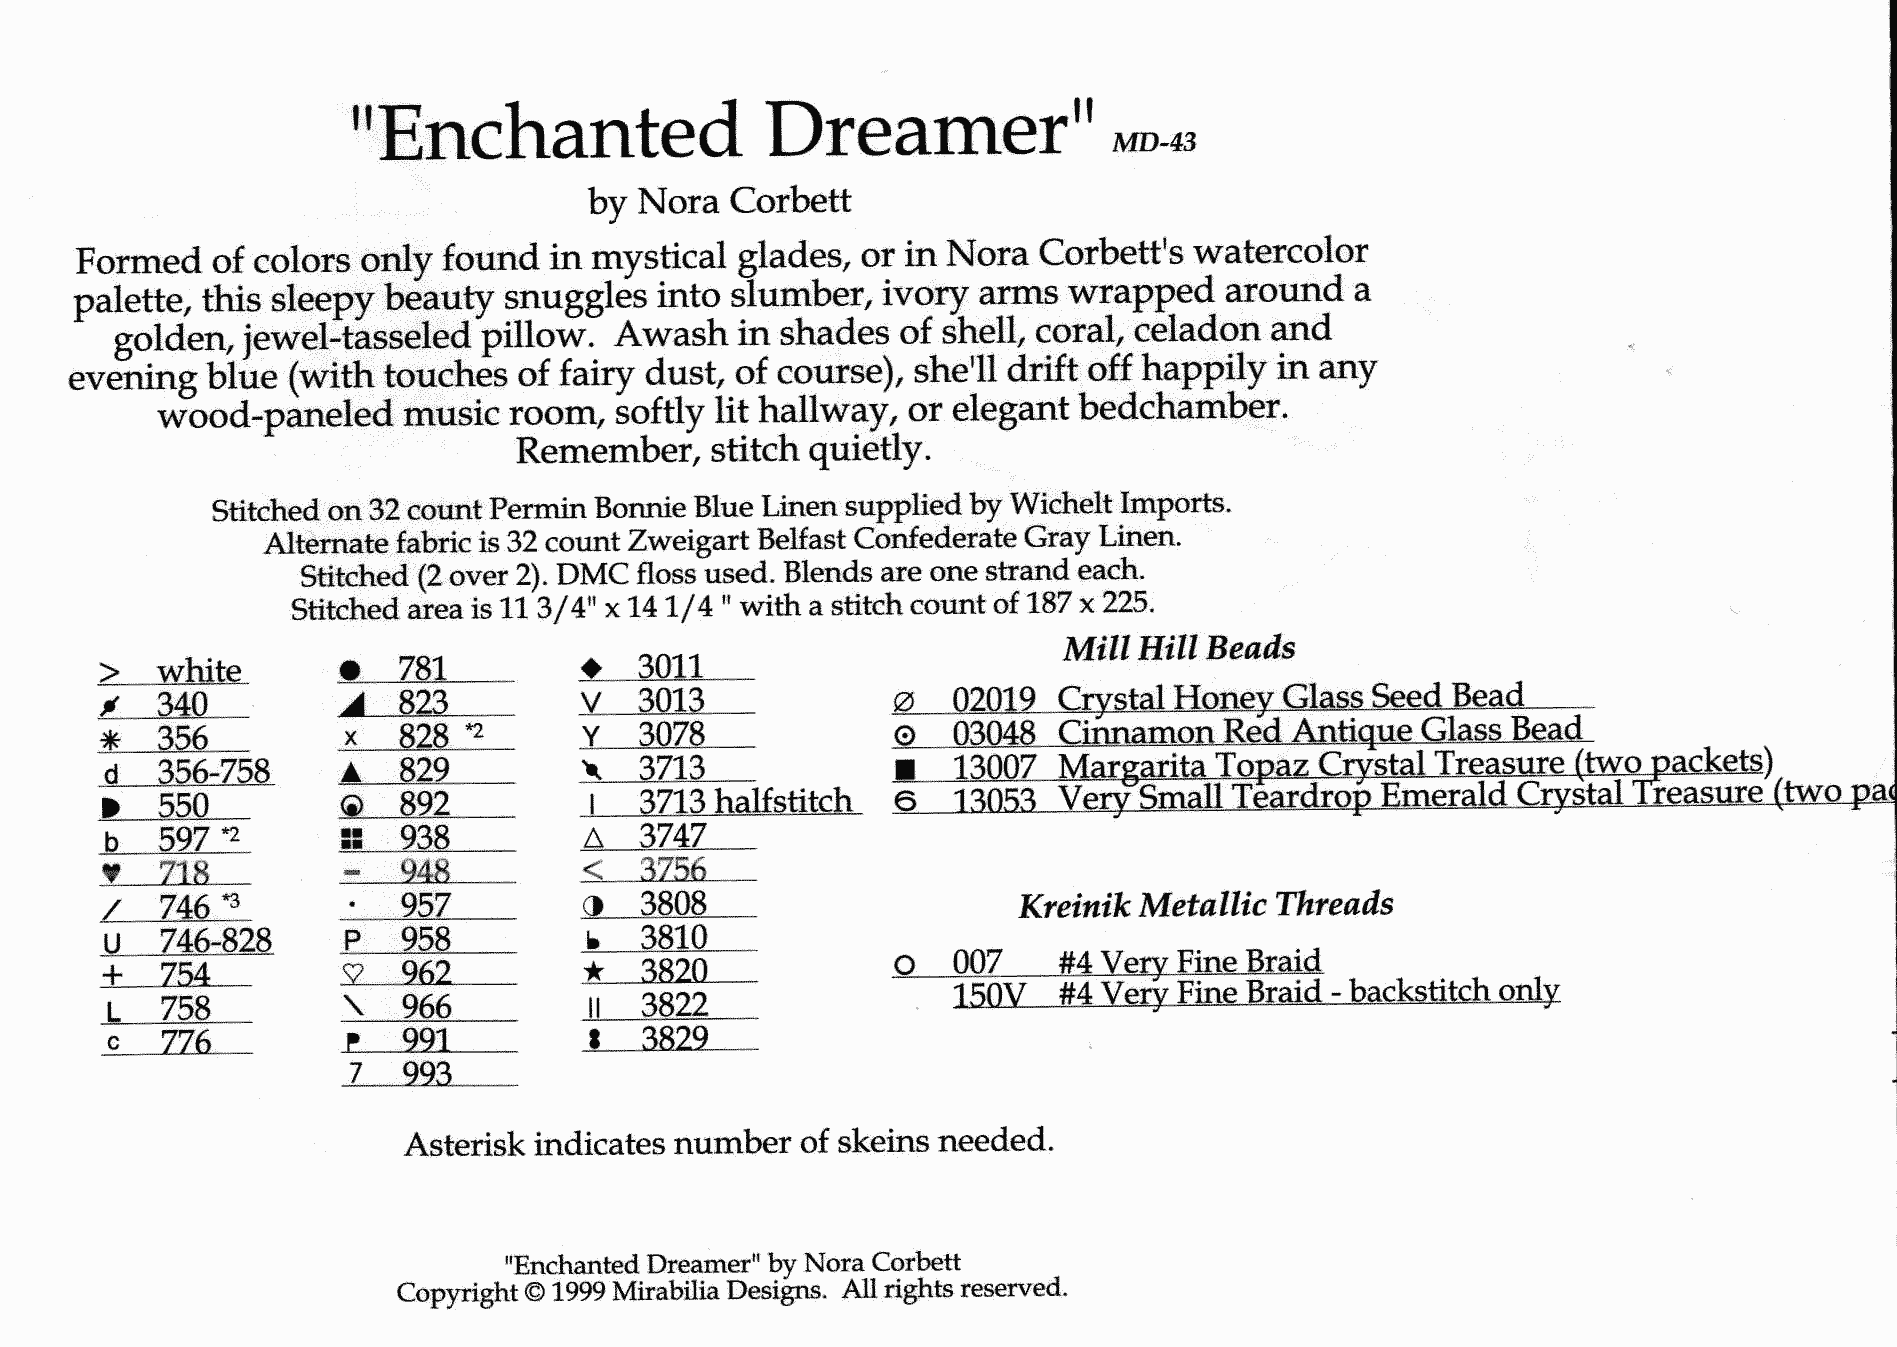 MD043 Enchanted dreamer key